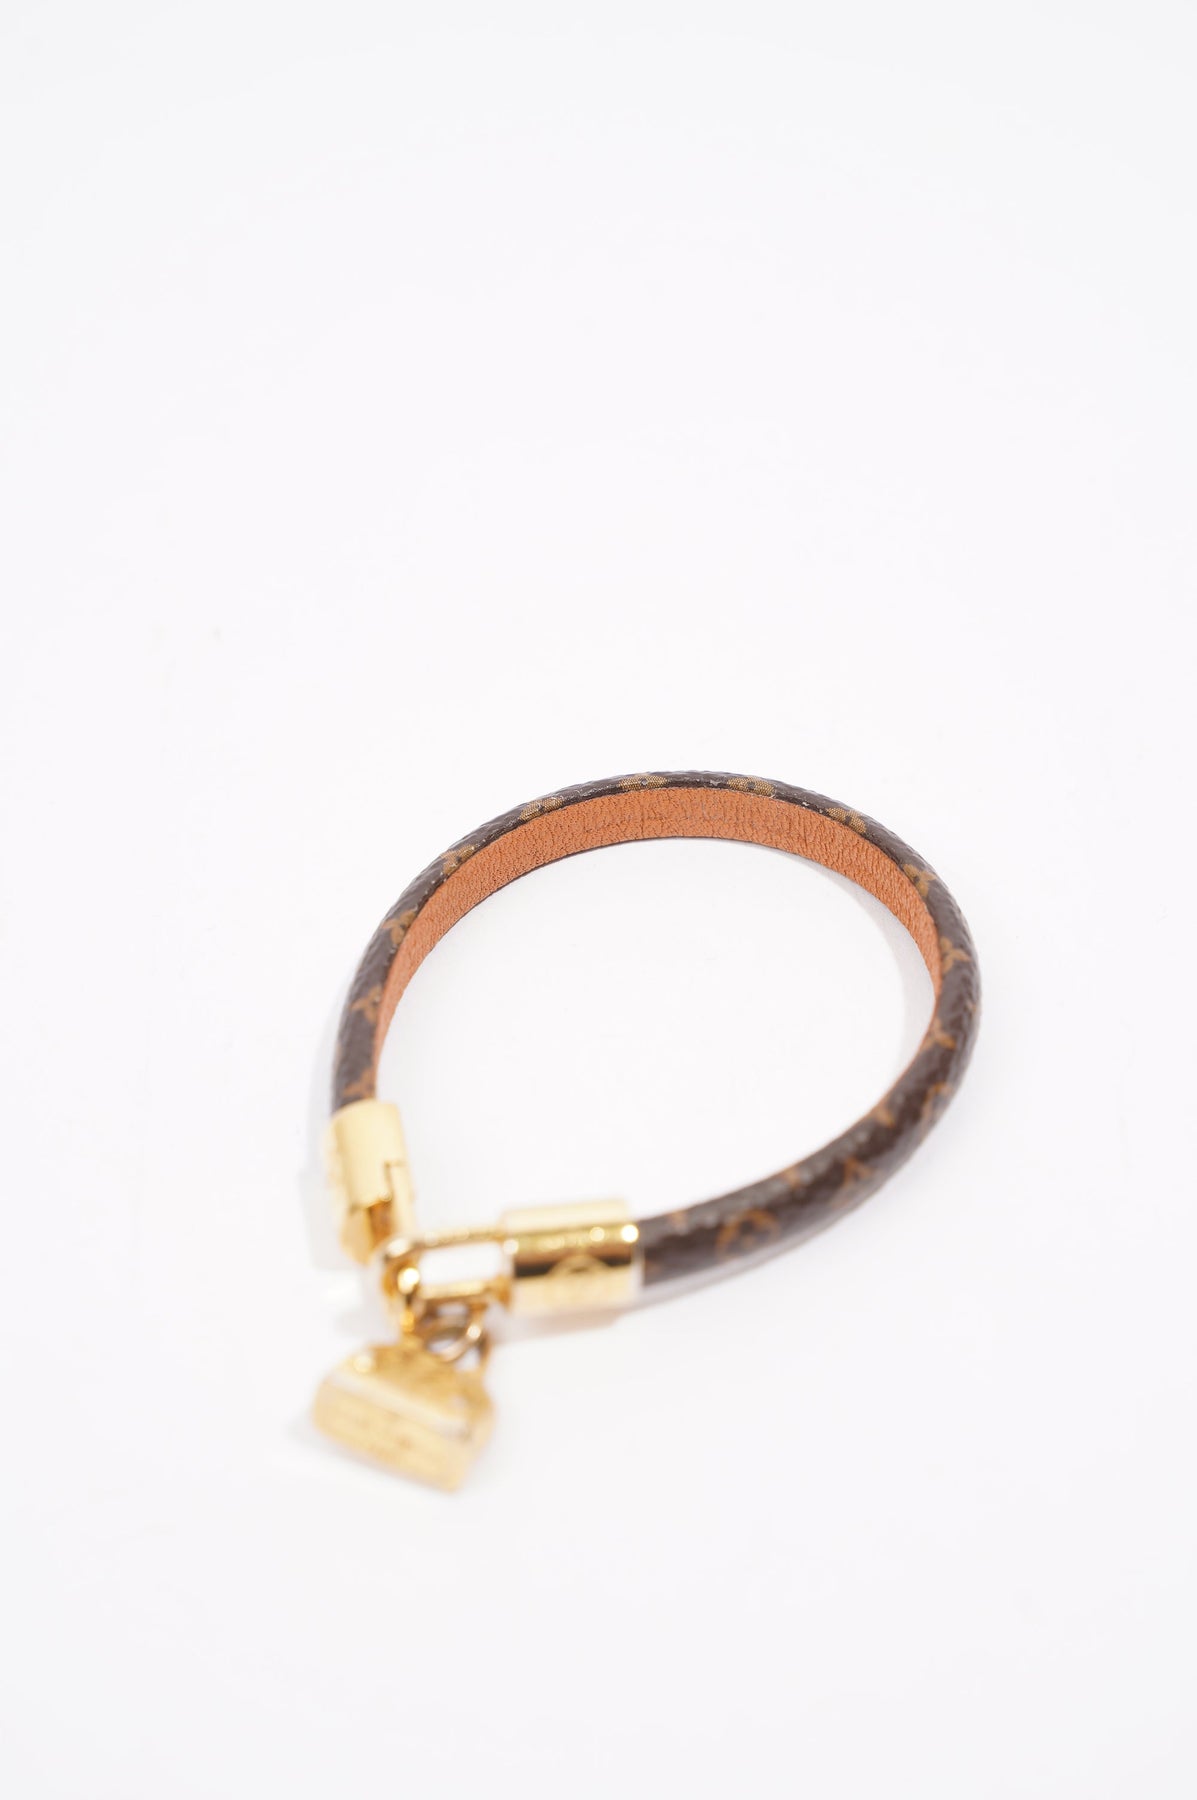 Louis Vuitton Alma Brown Canvas Gold Tone Charm Bracelet - ShopStyle